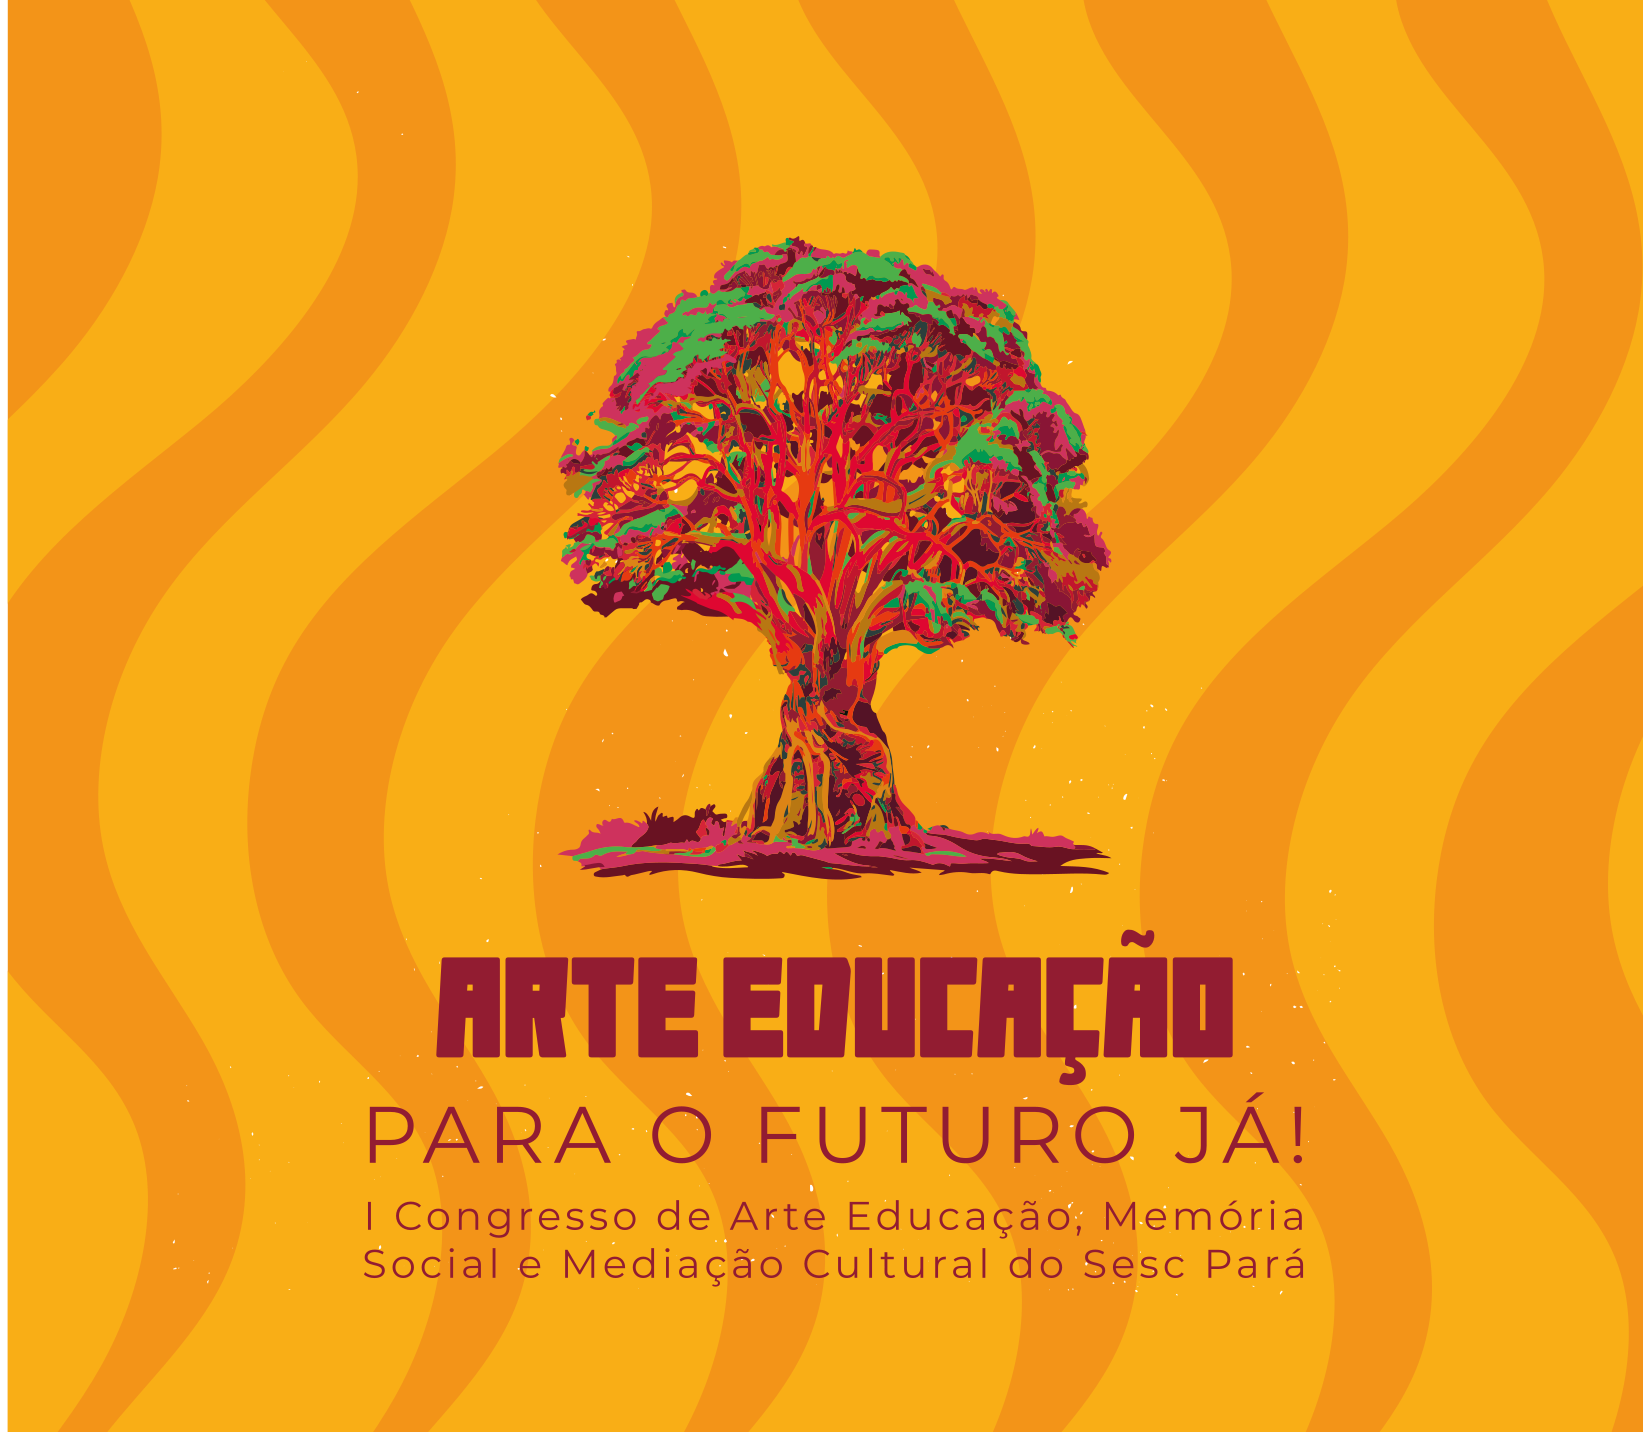 I Congresso de Arte Educação, Memória Social e Mediação Cultural do Sesc Pará